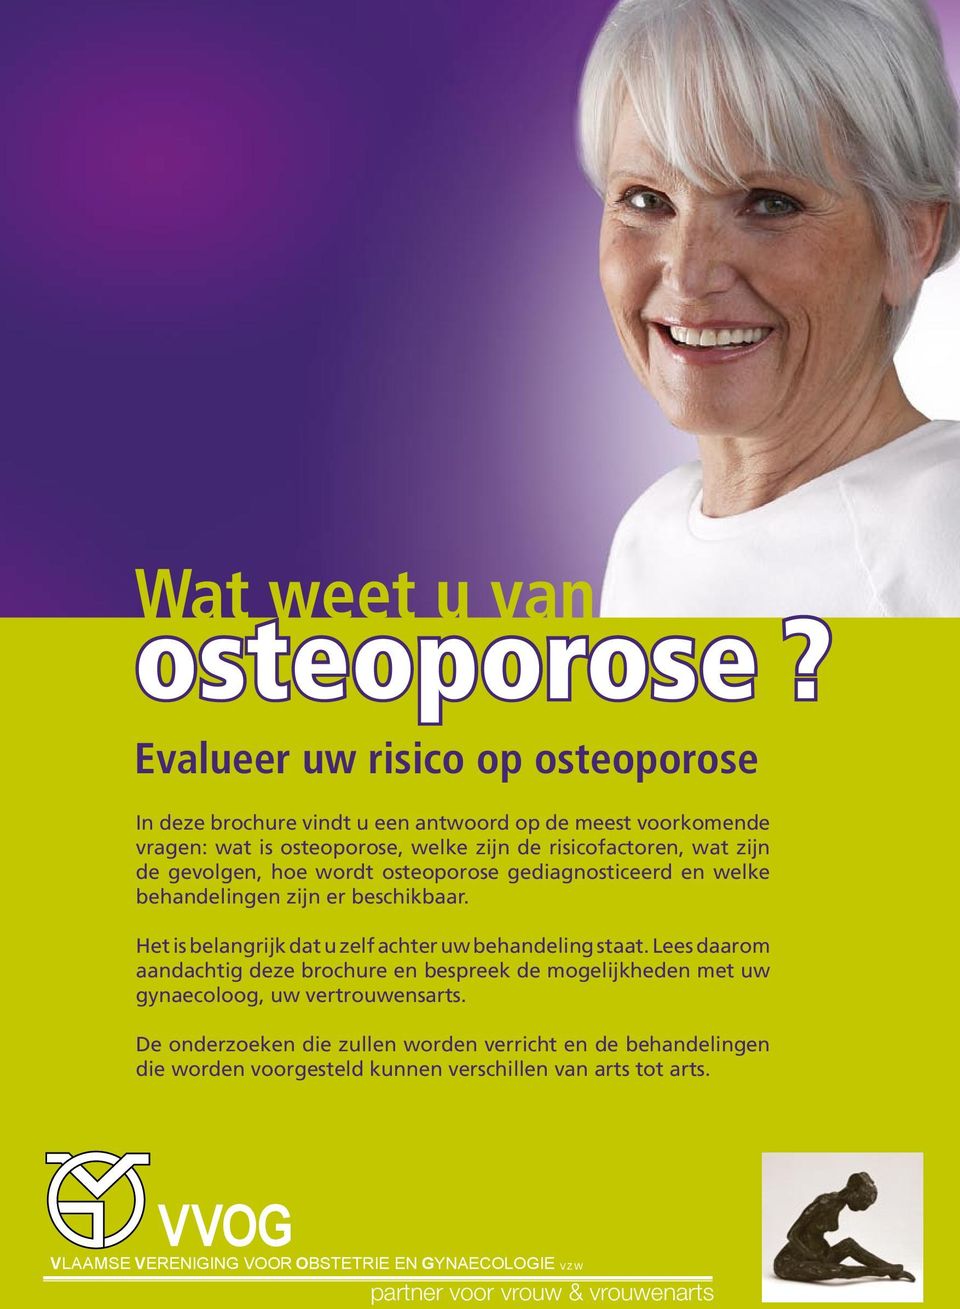 gevolgen, hoe wordt osteoporose gediagnosticeerd en welke behandelingen zijn er beschikbaar. Het is belangrijk dat u zelf achter uw behandeling staat.